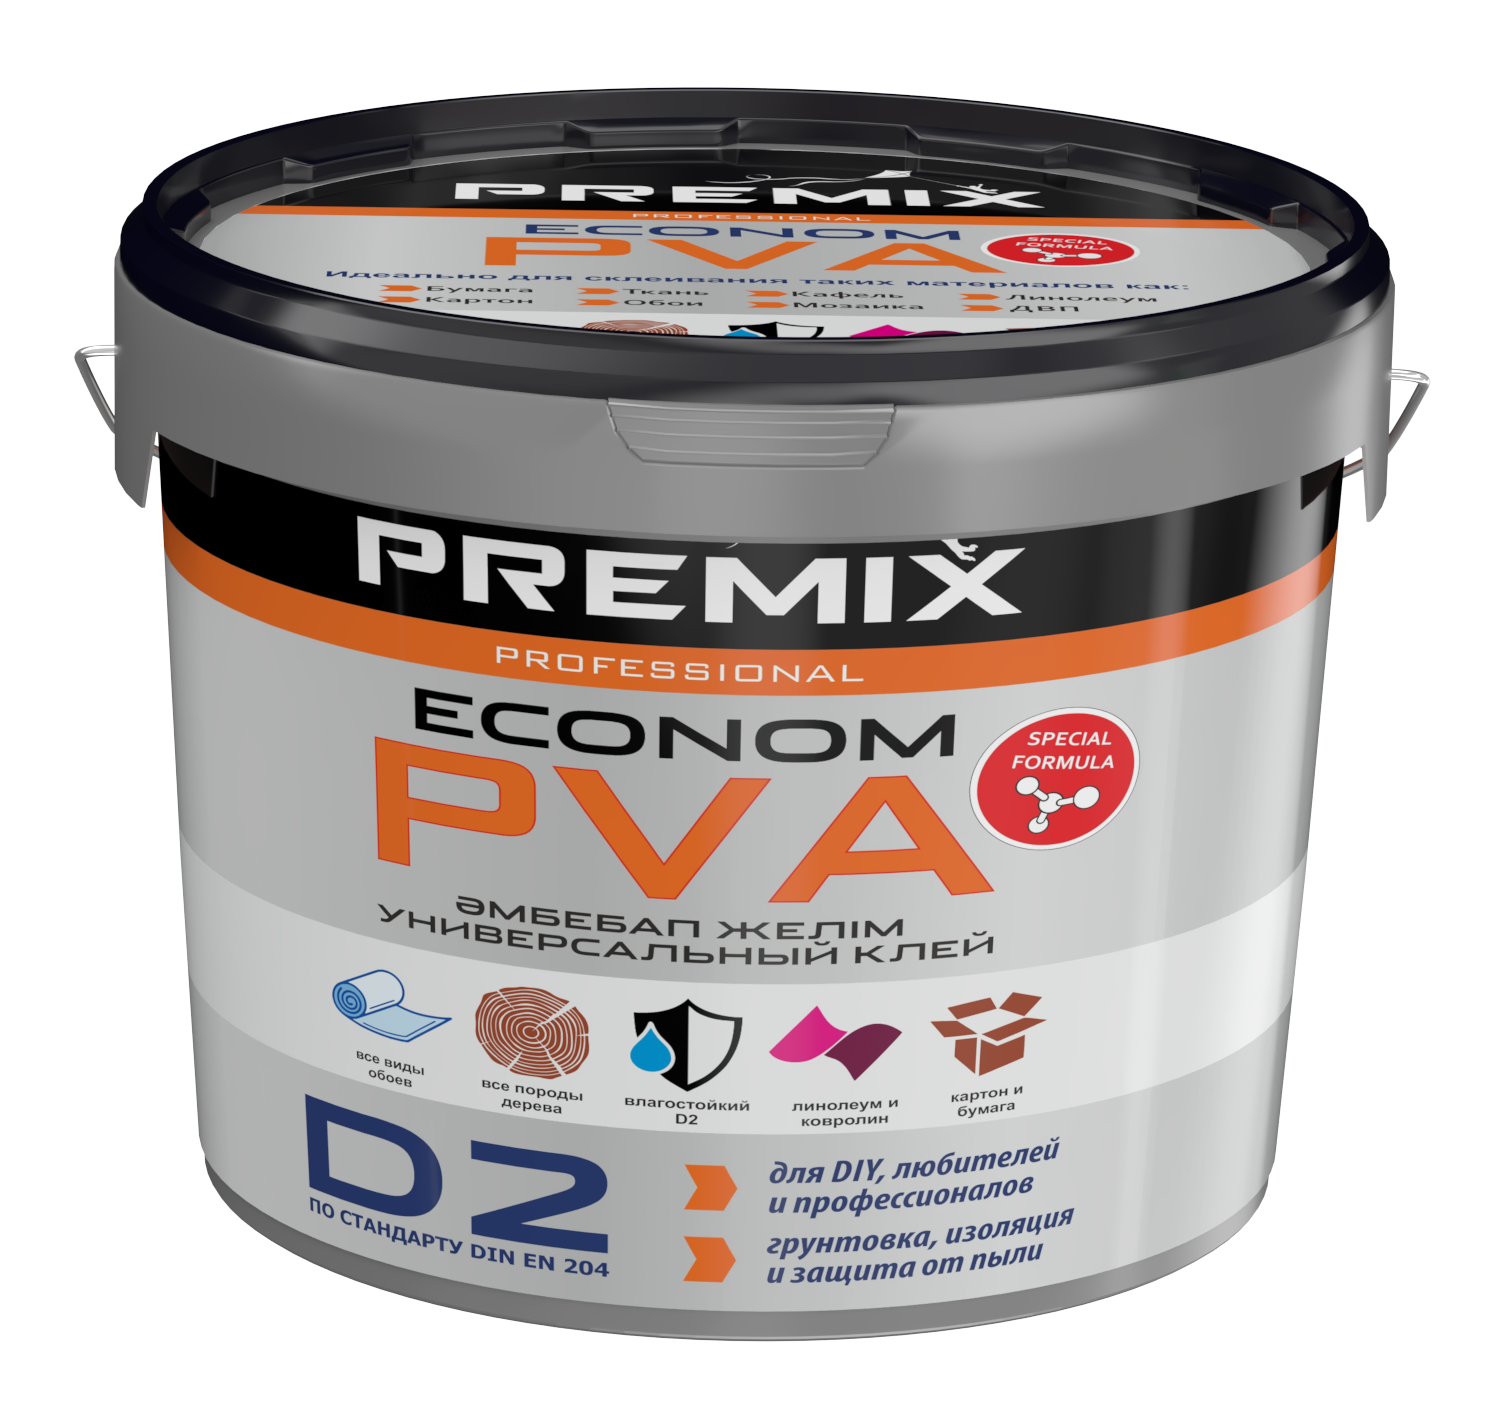 Premix клей PVA Econom универсальный клей (10кг)